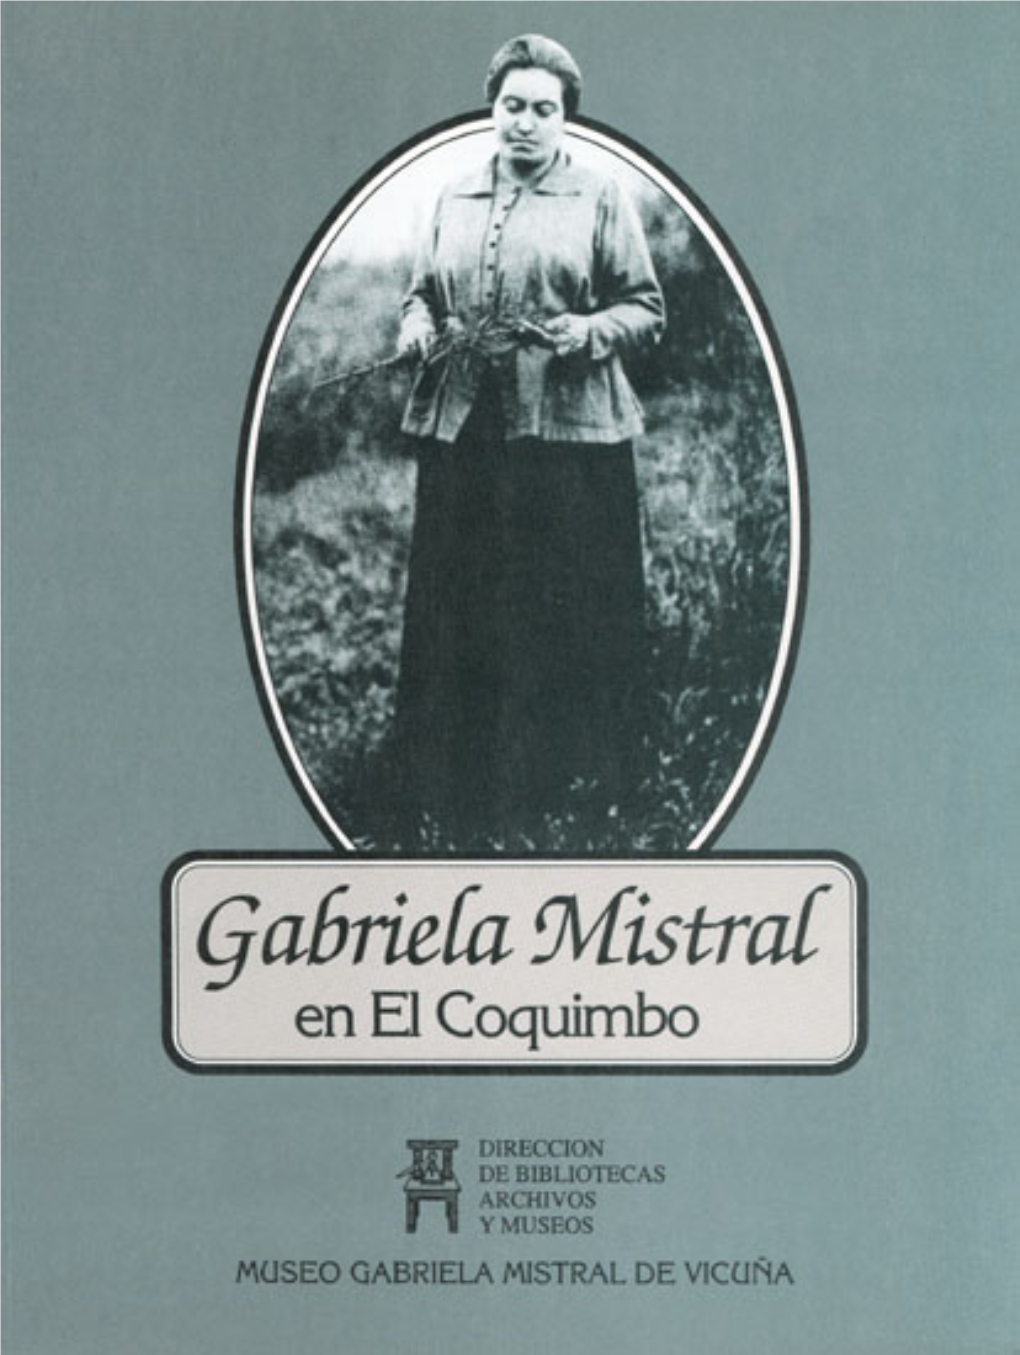 MUSEO GABRIELA MISTRAL DE VICUÑA DIRECTOR DE BIBLIOTECAS, ARCHIVOS Y MUSEOS Marta Cruz-Coke Madrid